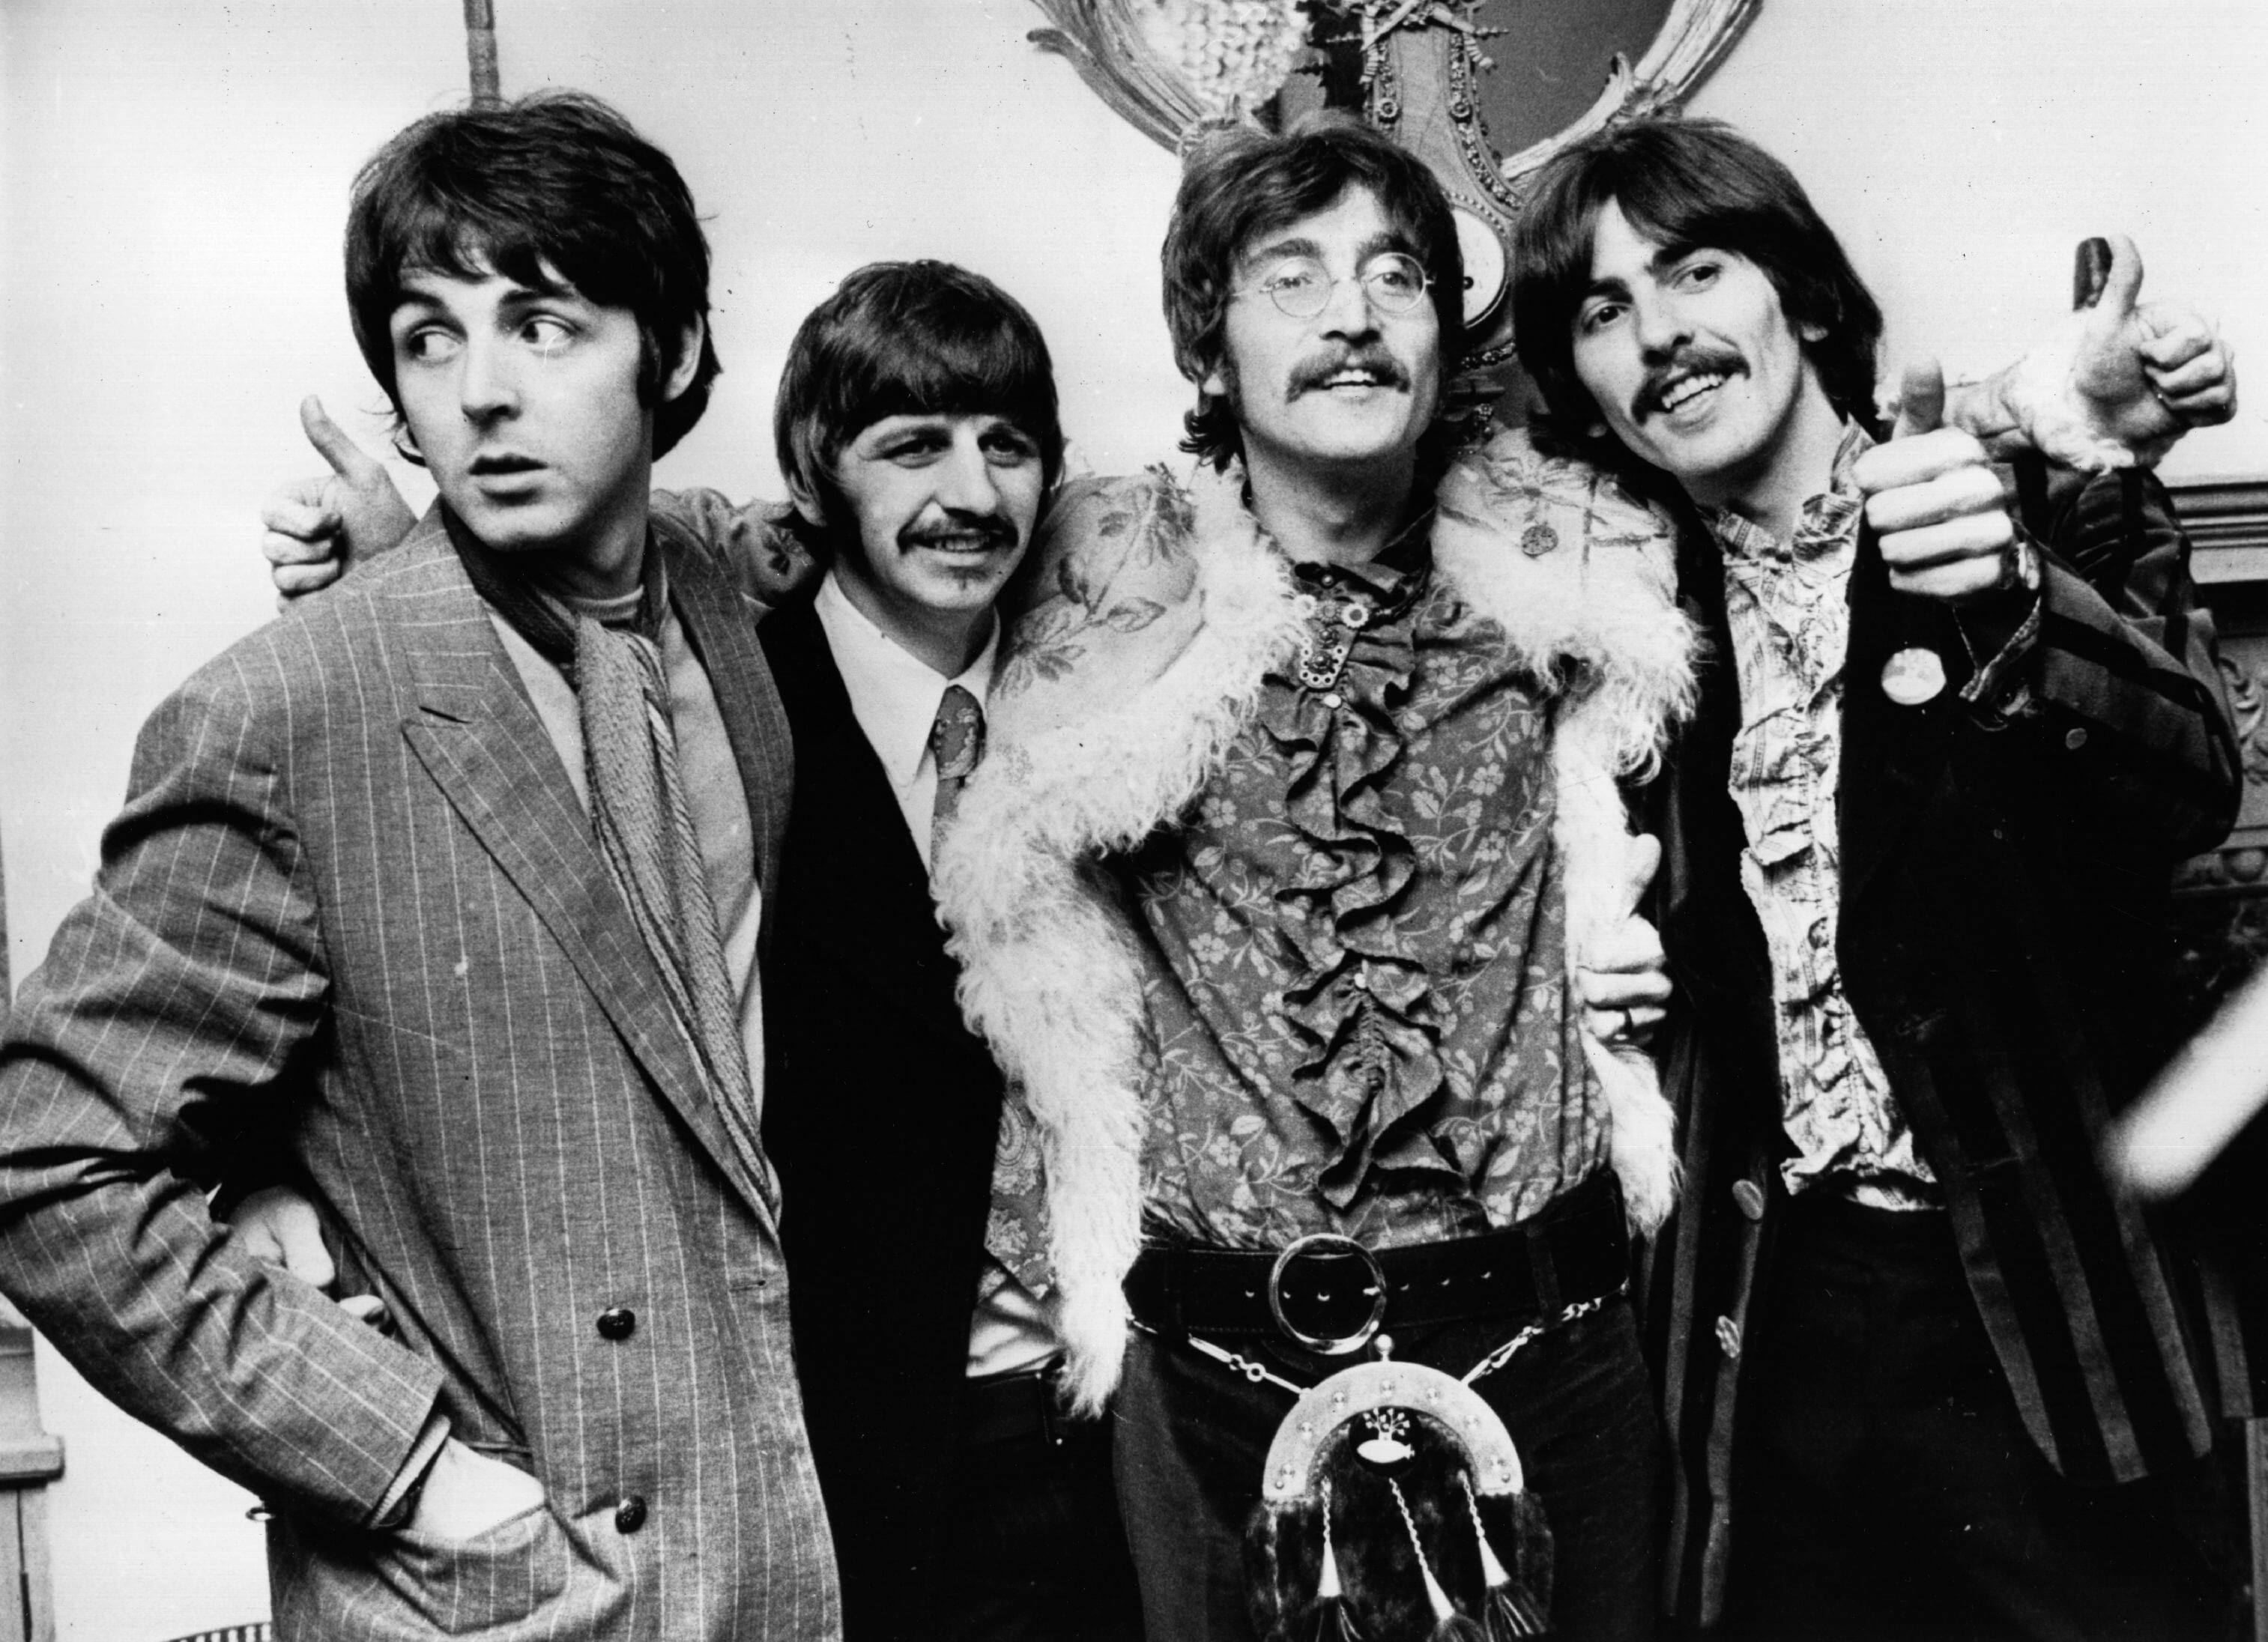 The Beatles in black-and-white during the "Ob-La-Di, Ob-La-Da" era